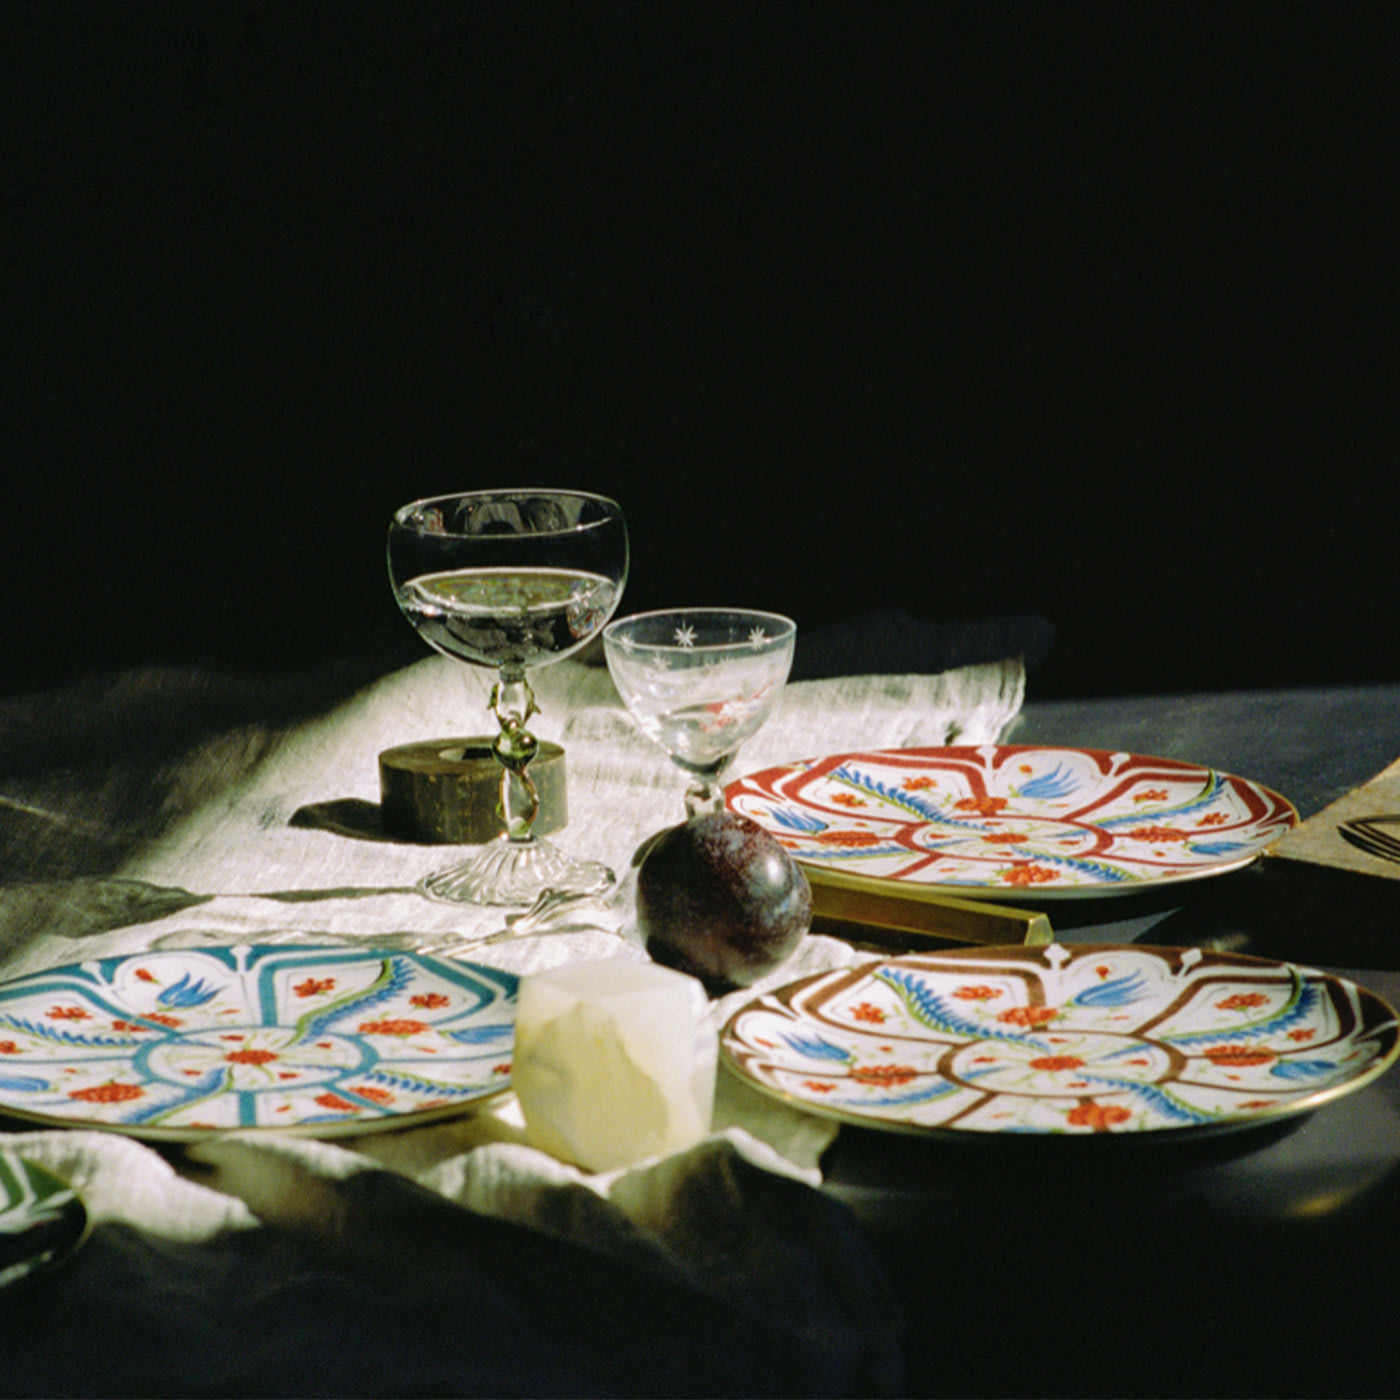 Izmir Dinner Plates Set of 4 - Laboratorio Paravicini